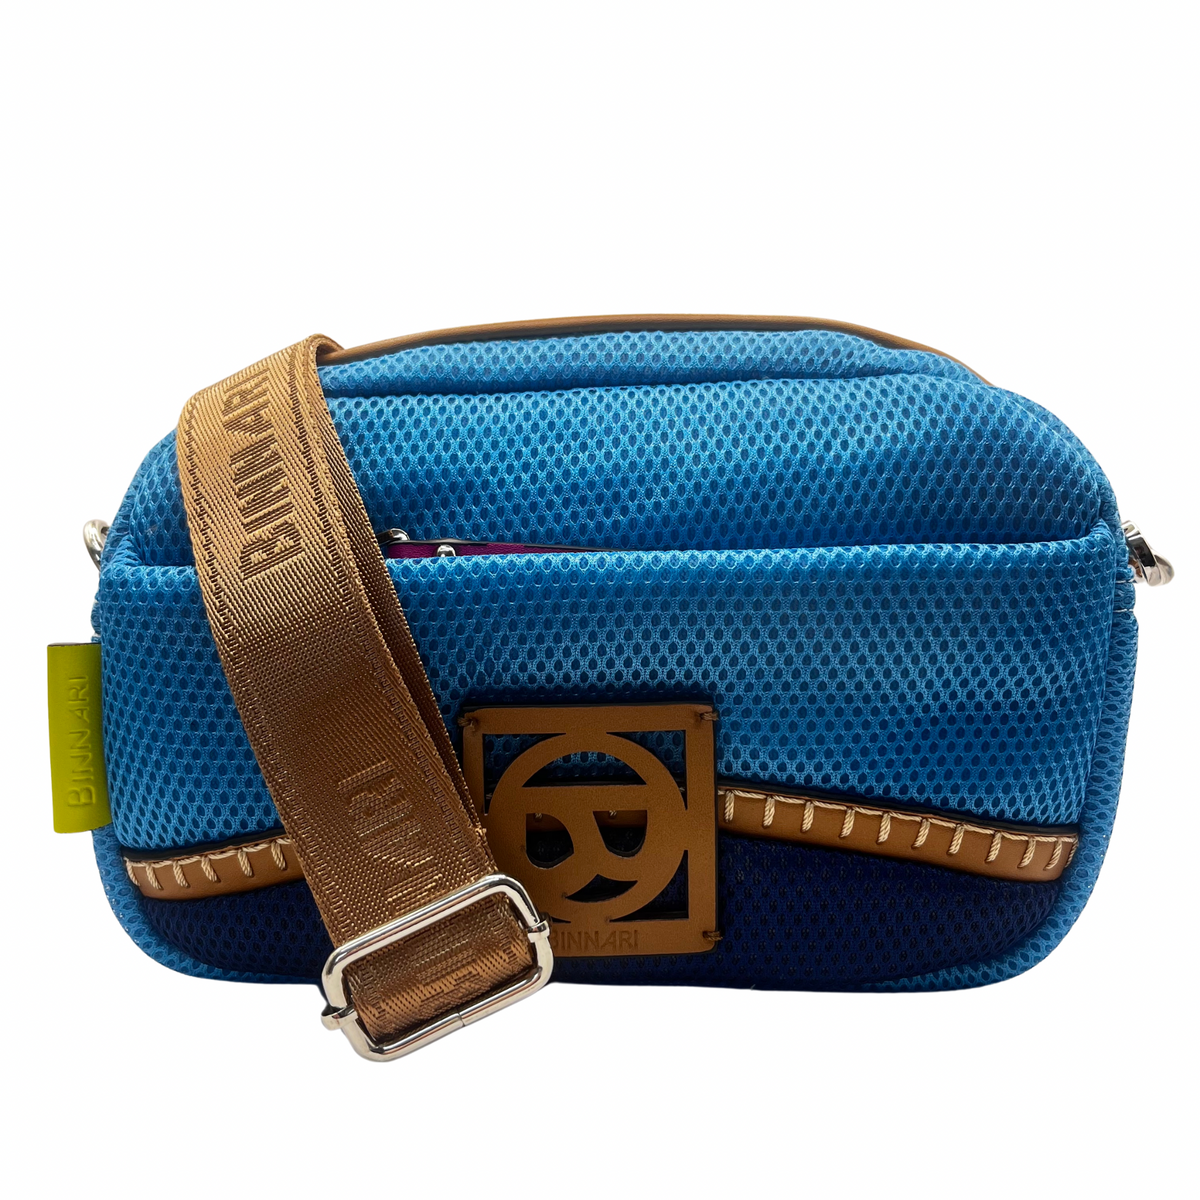 Binnari Blue Mesh Crossbody Bag